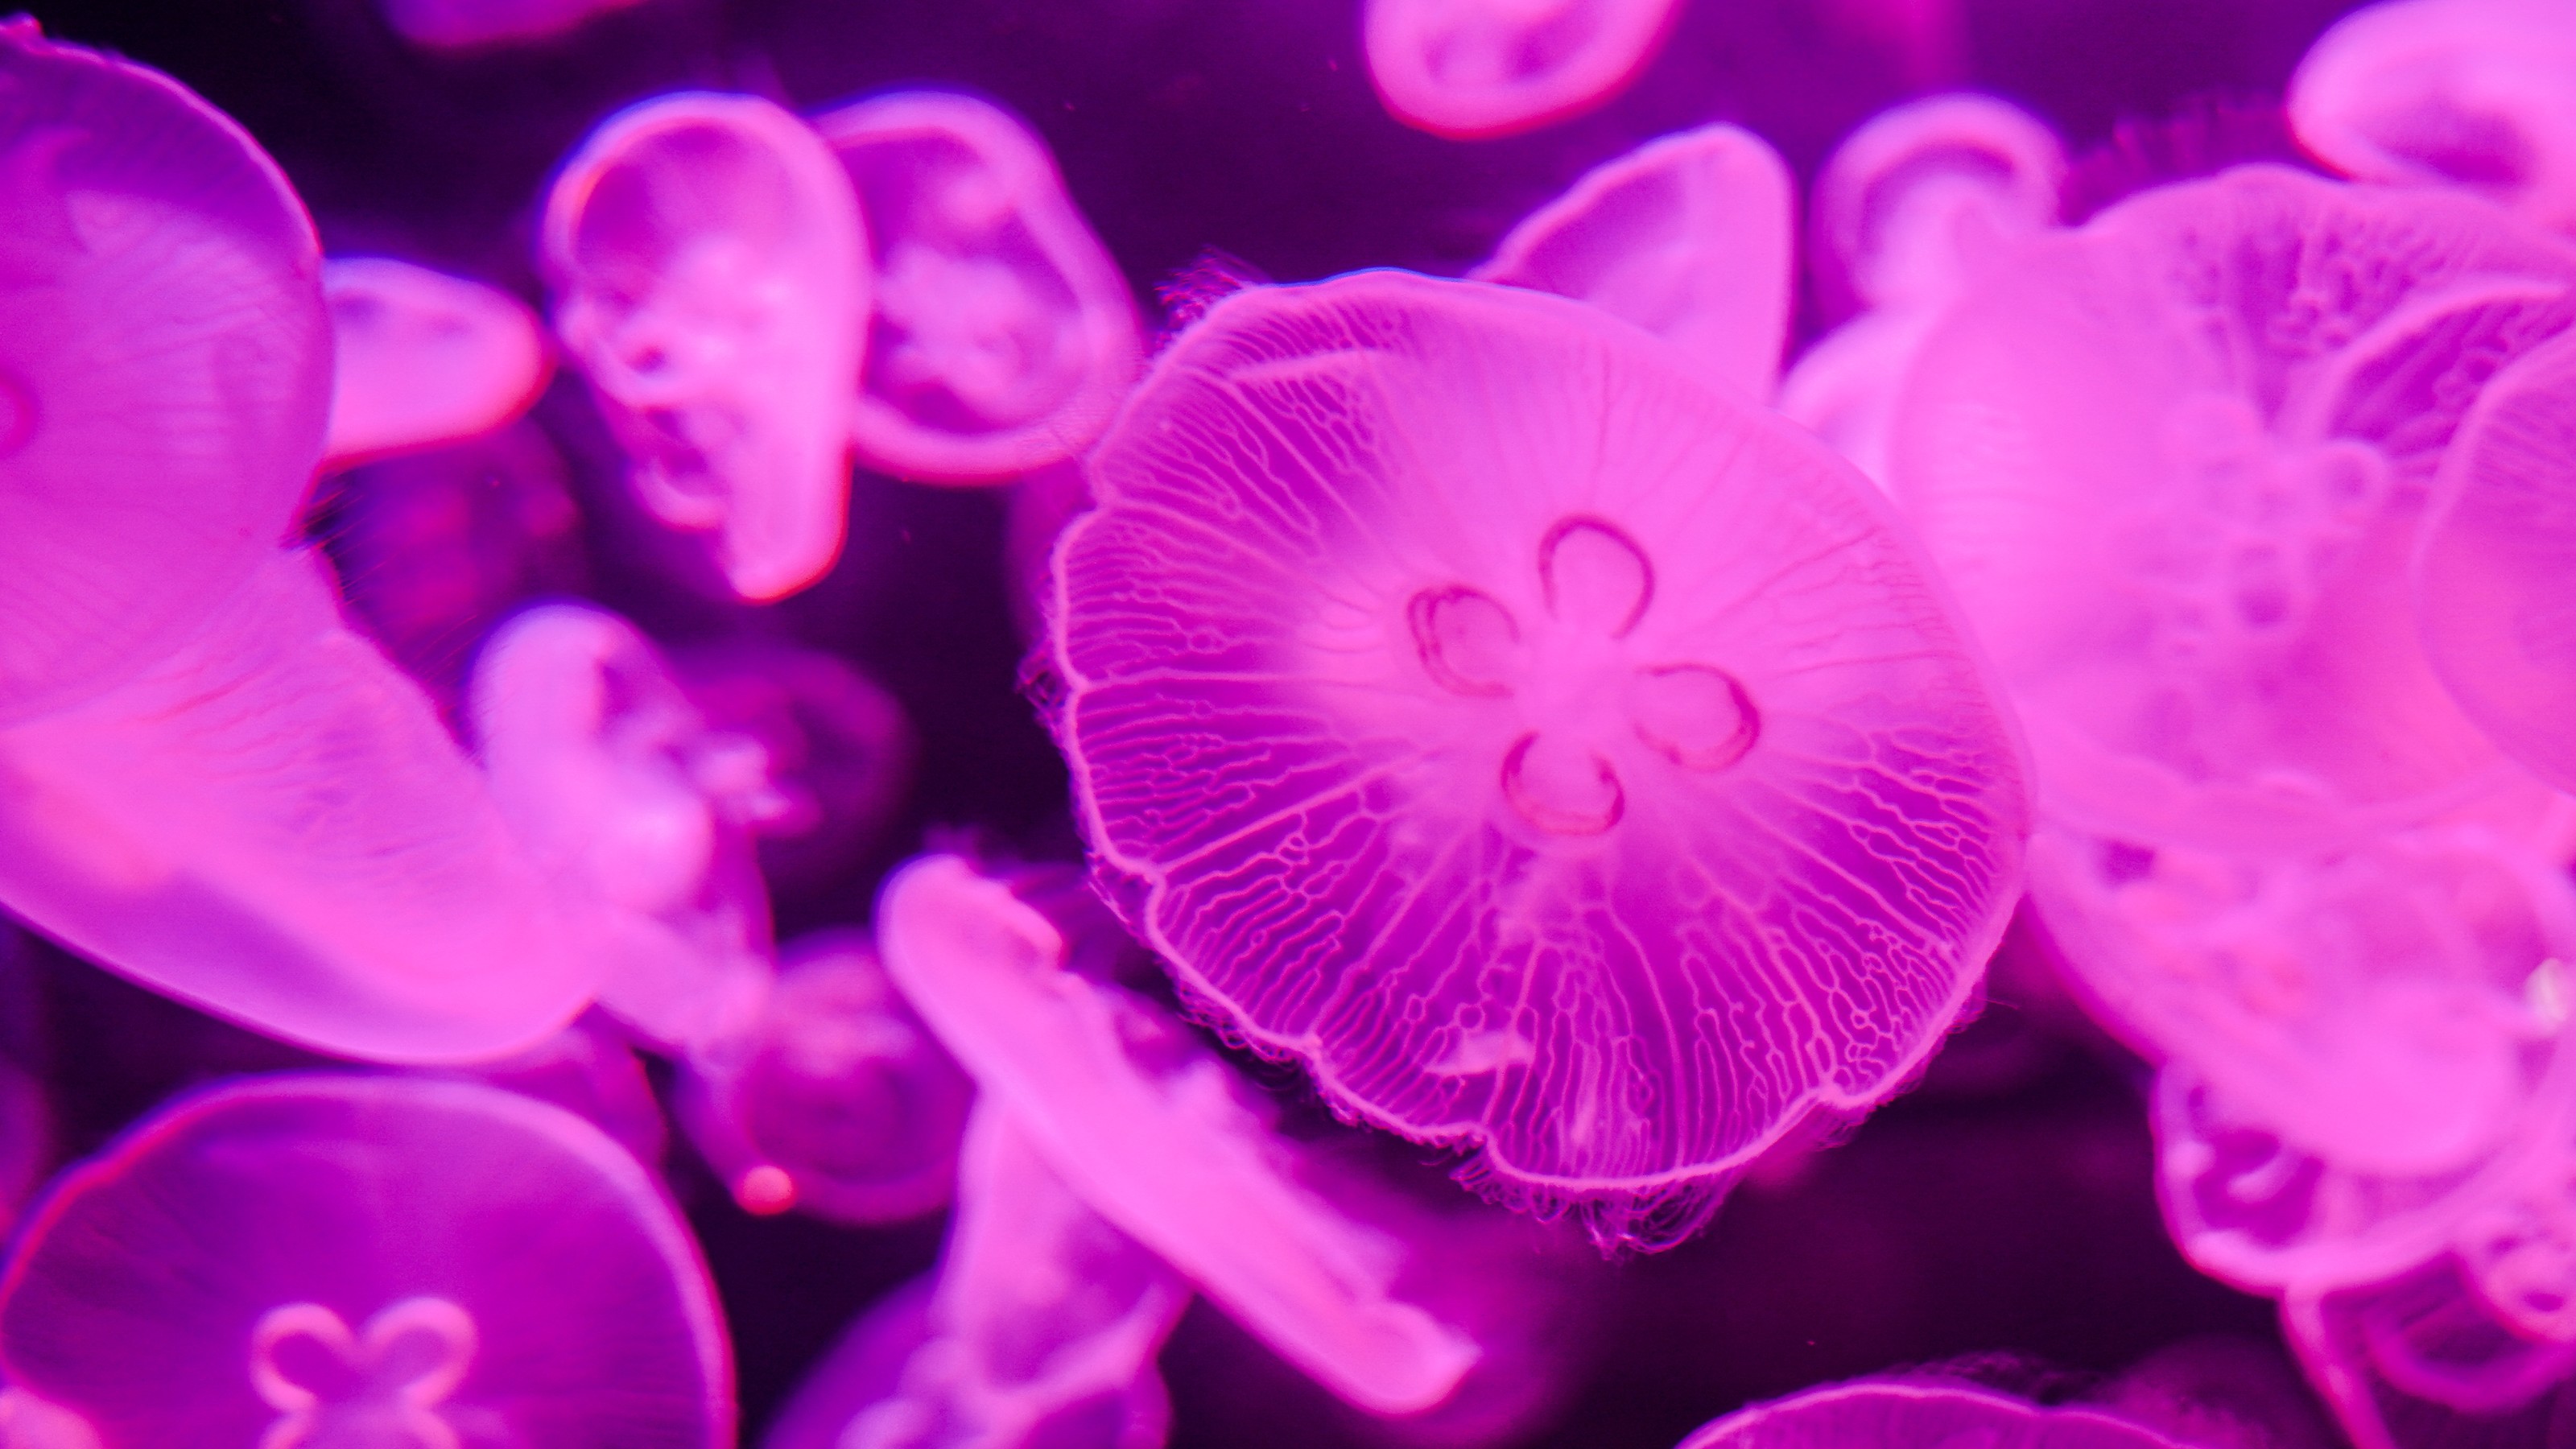 precambrian jellyfish fossils